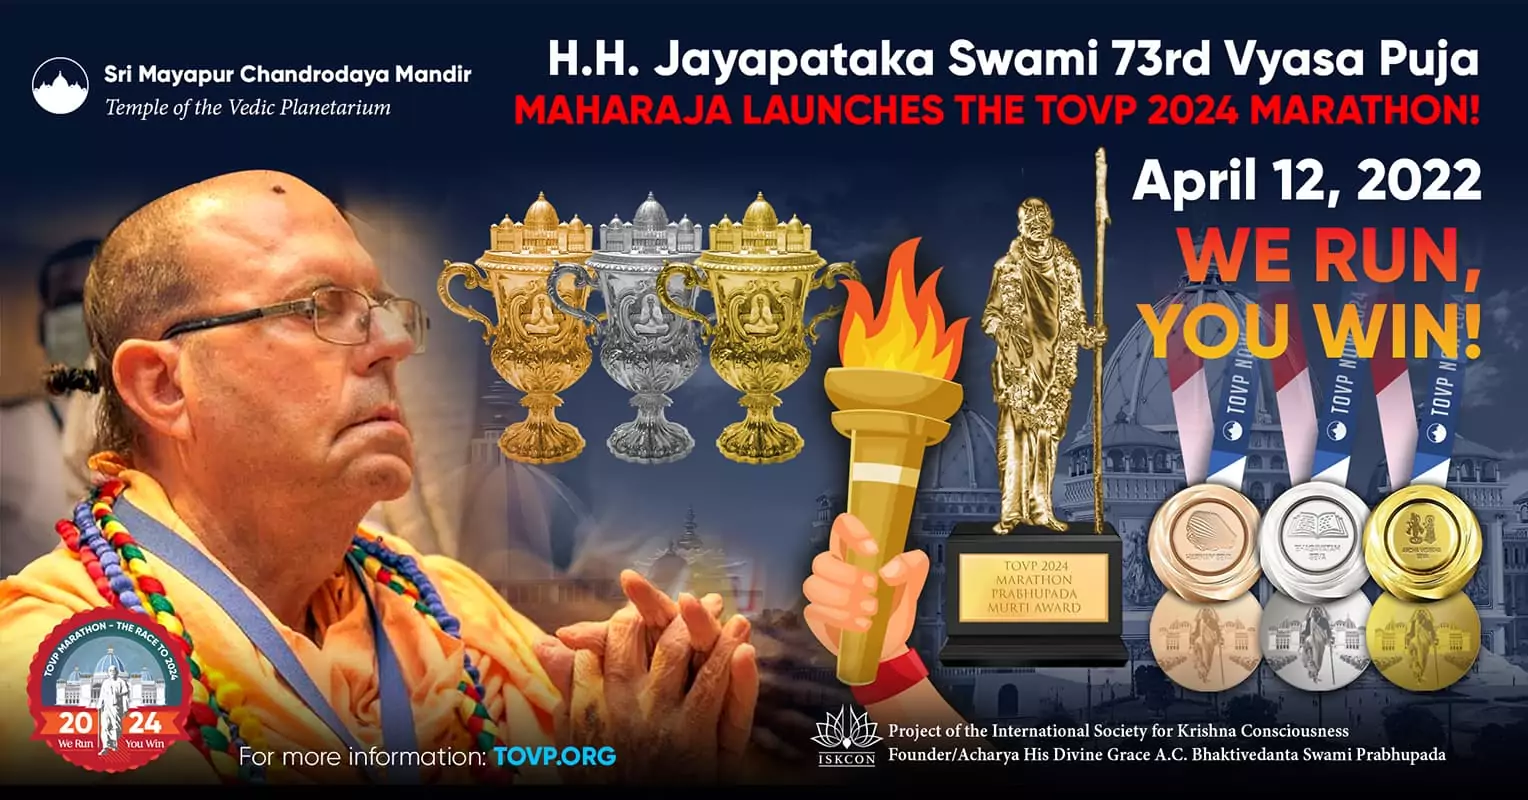 HH Jayapataka Swami annuncia il lancio ufficiale della maratona TOVP 2024 durante la sua 73a celebrazione della Vyasa Puja